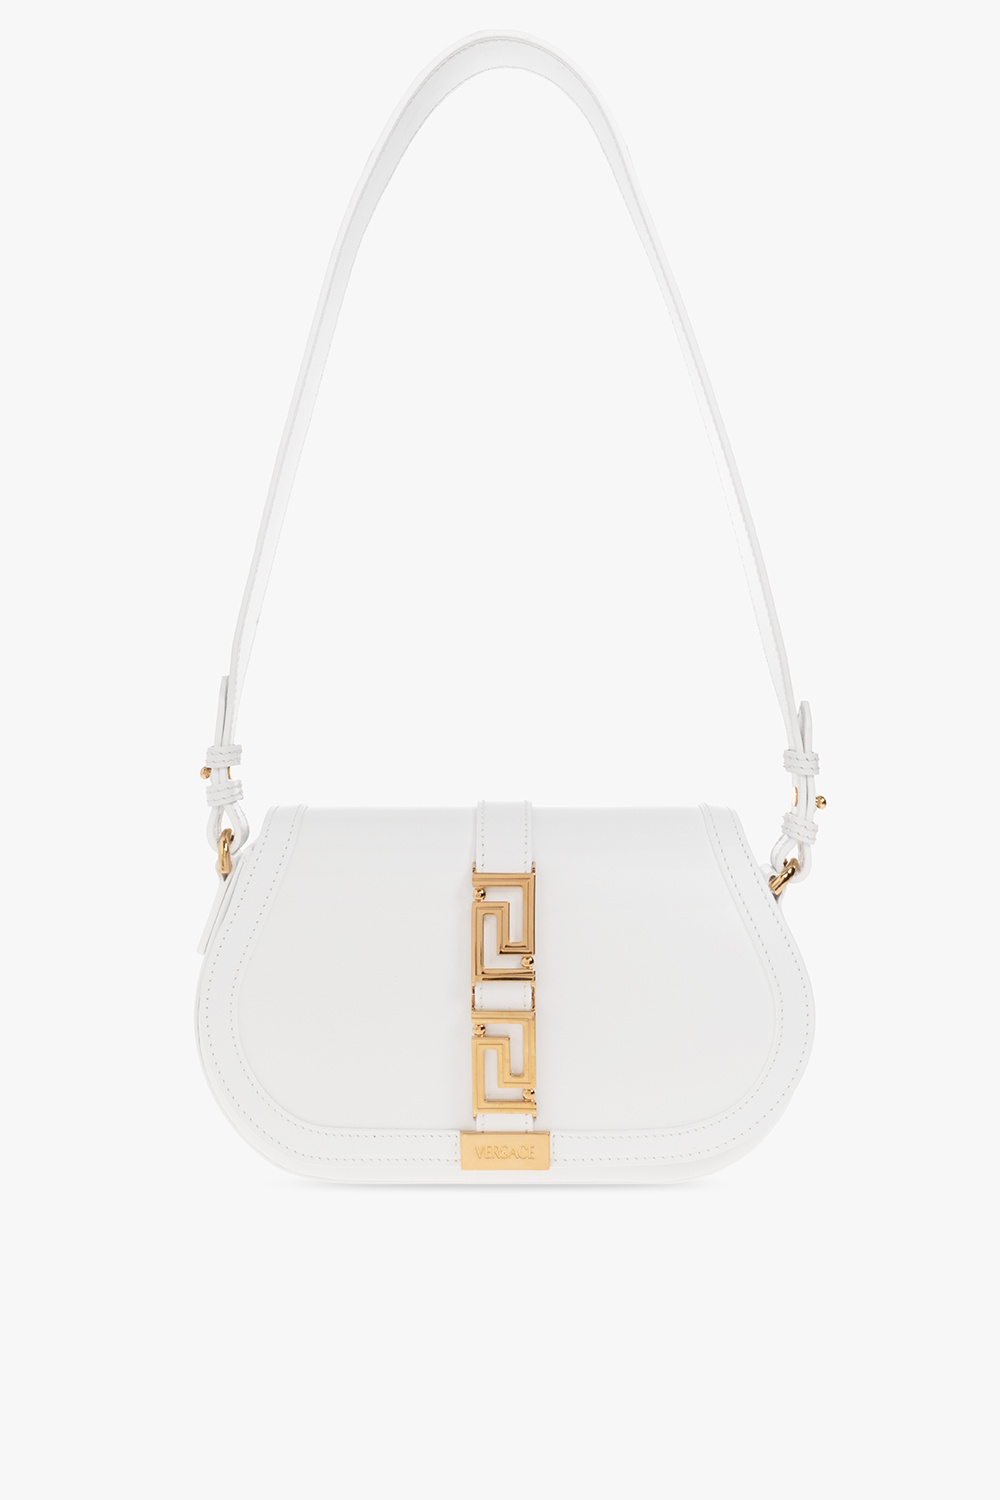 Versace ‘Greca ‘Goddess’ shoulder bag